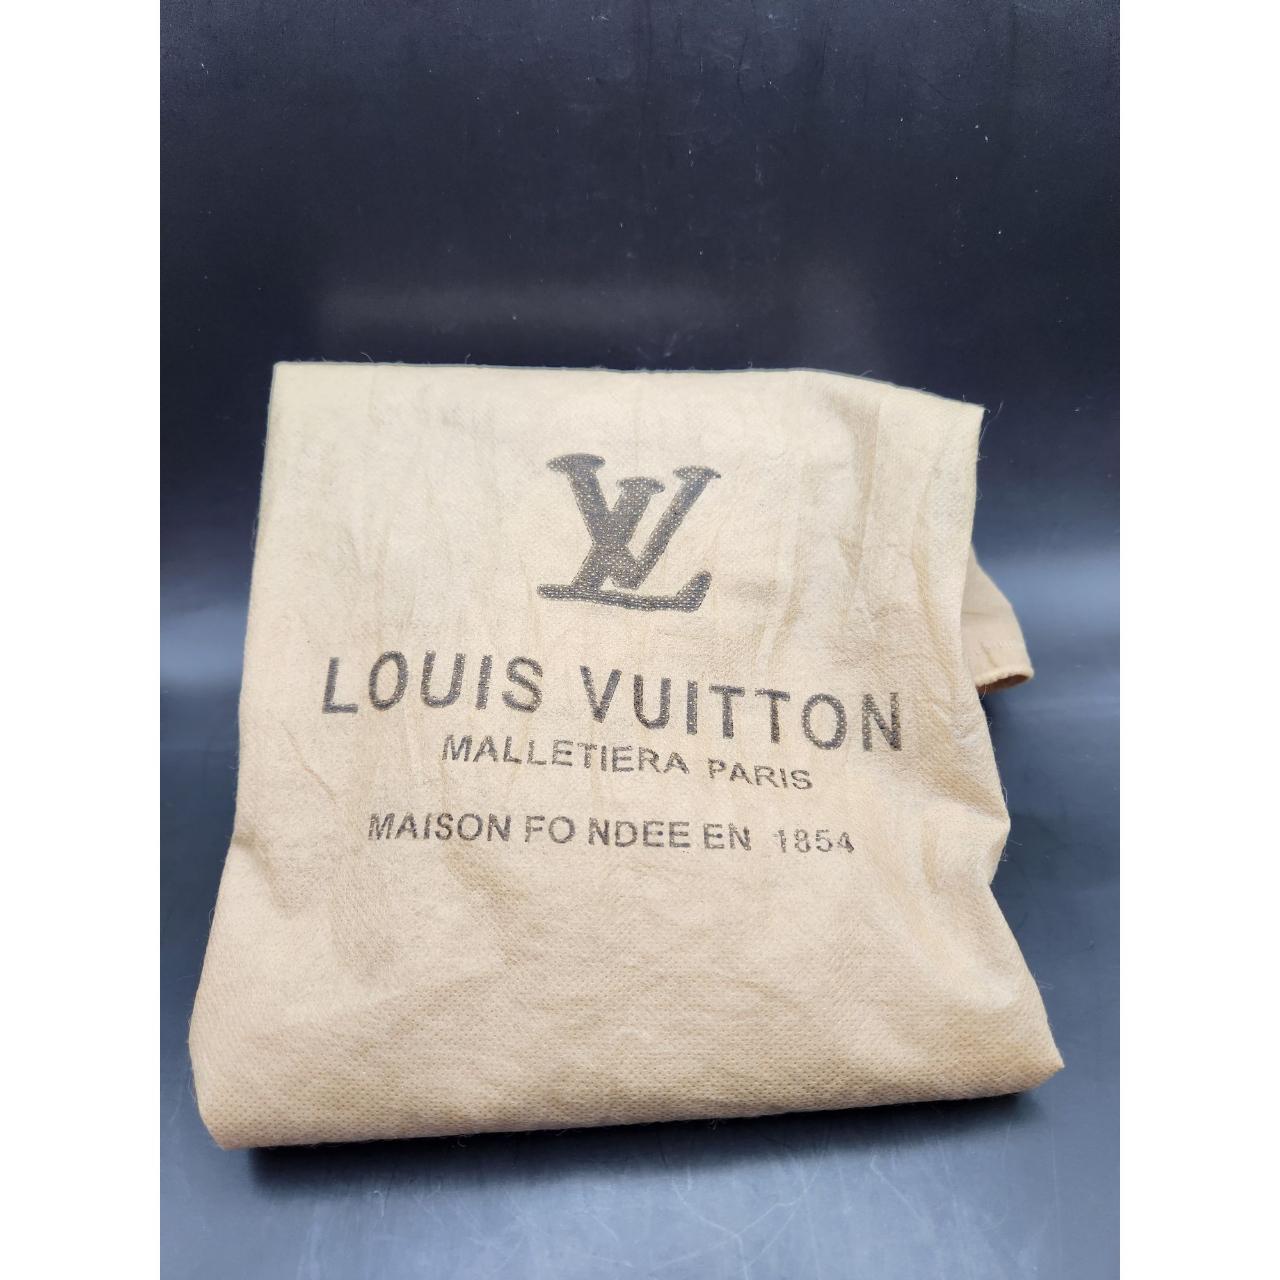 Louis Vuitton Cover Bag MALLETIERA PARIS MAISON FO